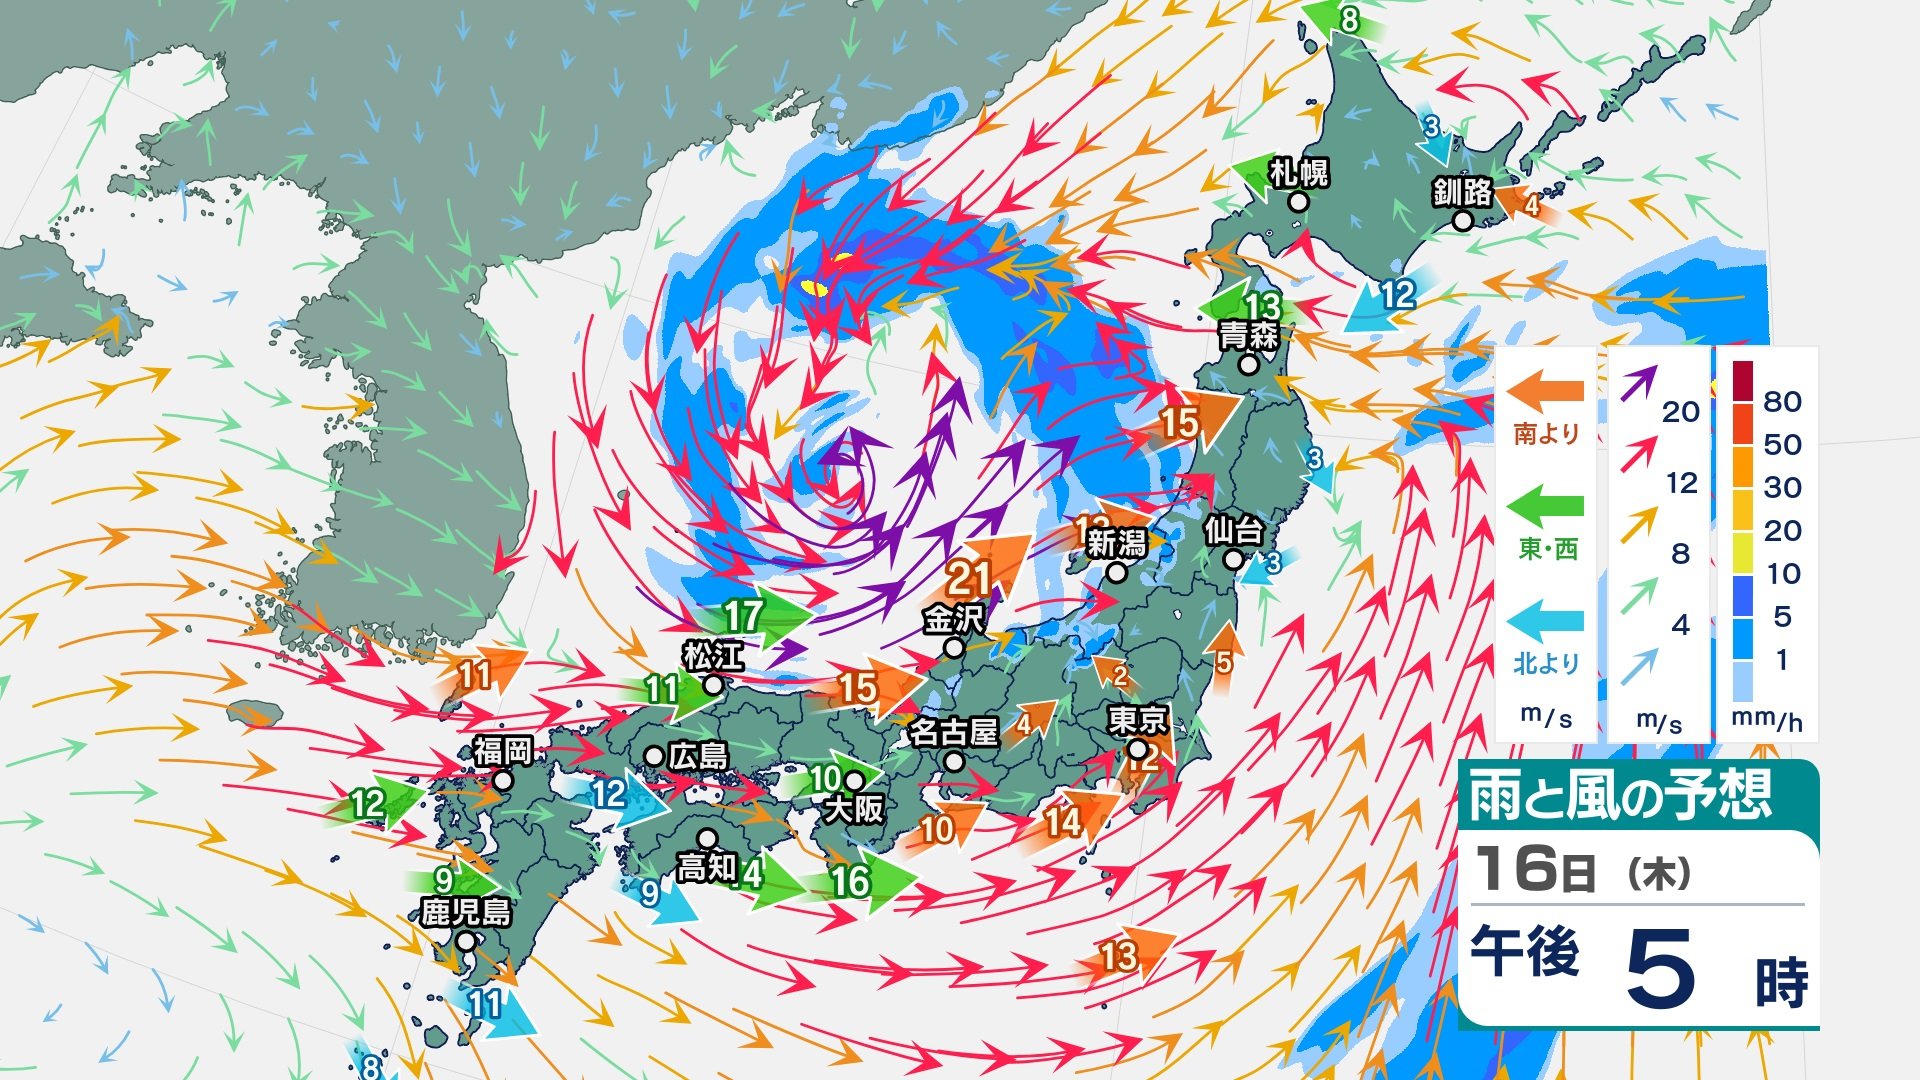 日本海上空に“寒冷渦” ー21℃以下「この時期としては強い寒気」の影響で17日にかけて大気の状態が非常に不安定に…落雷、突風、急な強い雨、降ひょうに注意（エリア別“防災事項”）